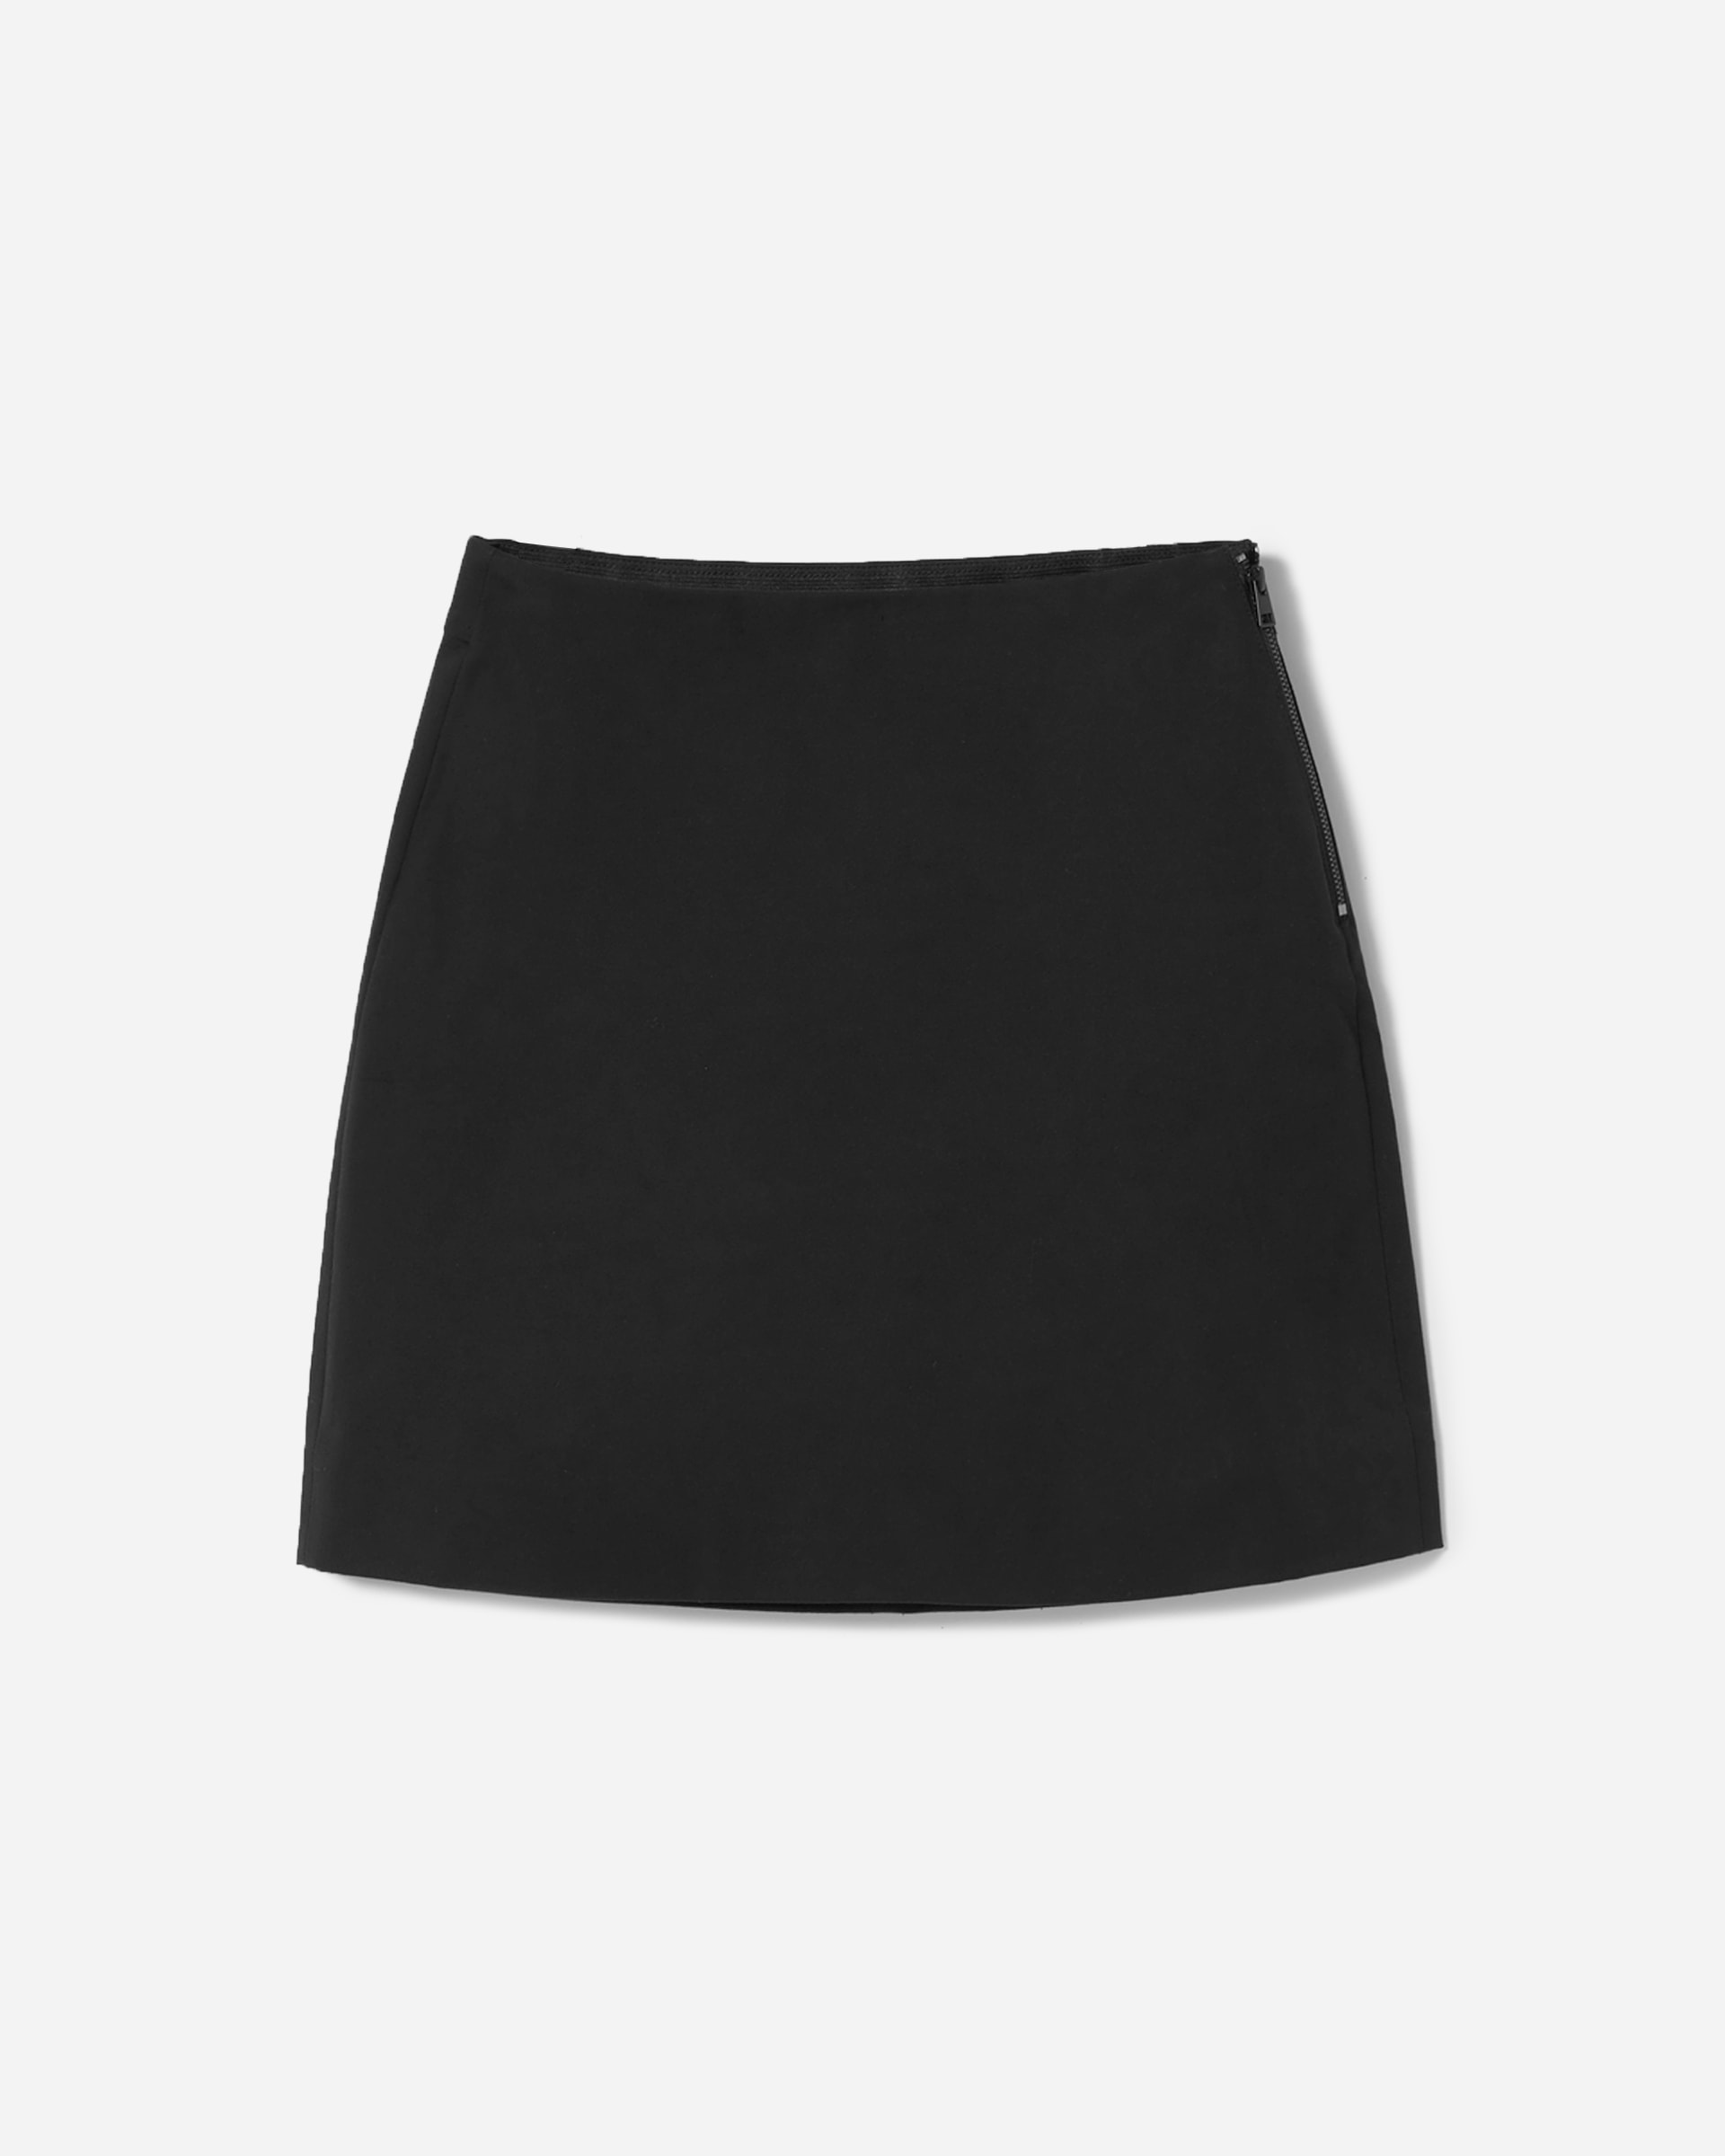 The Mini Skirt Black – Everlane